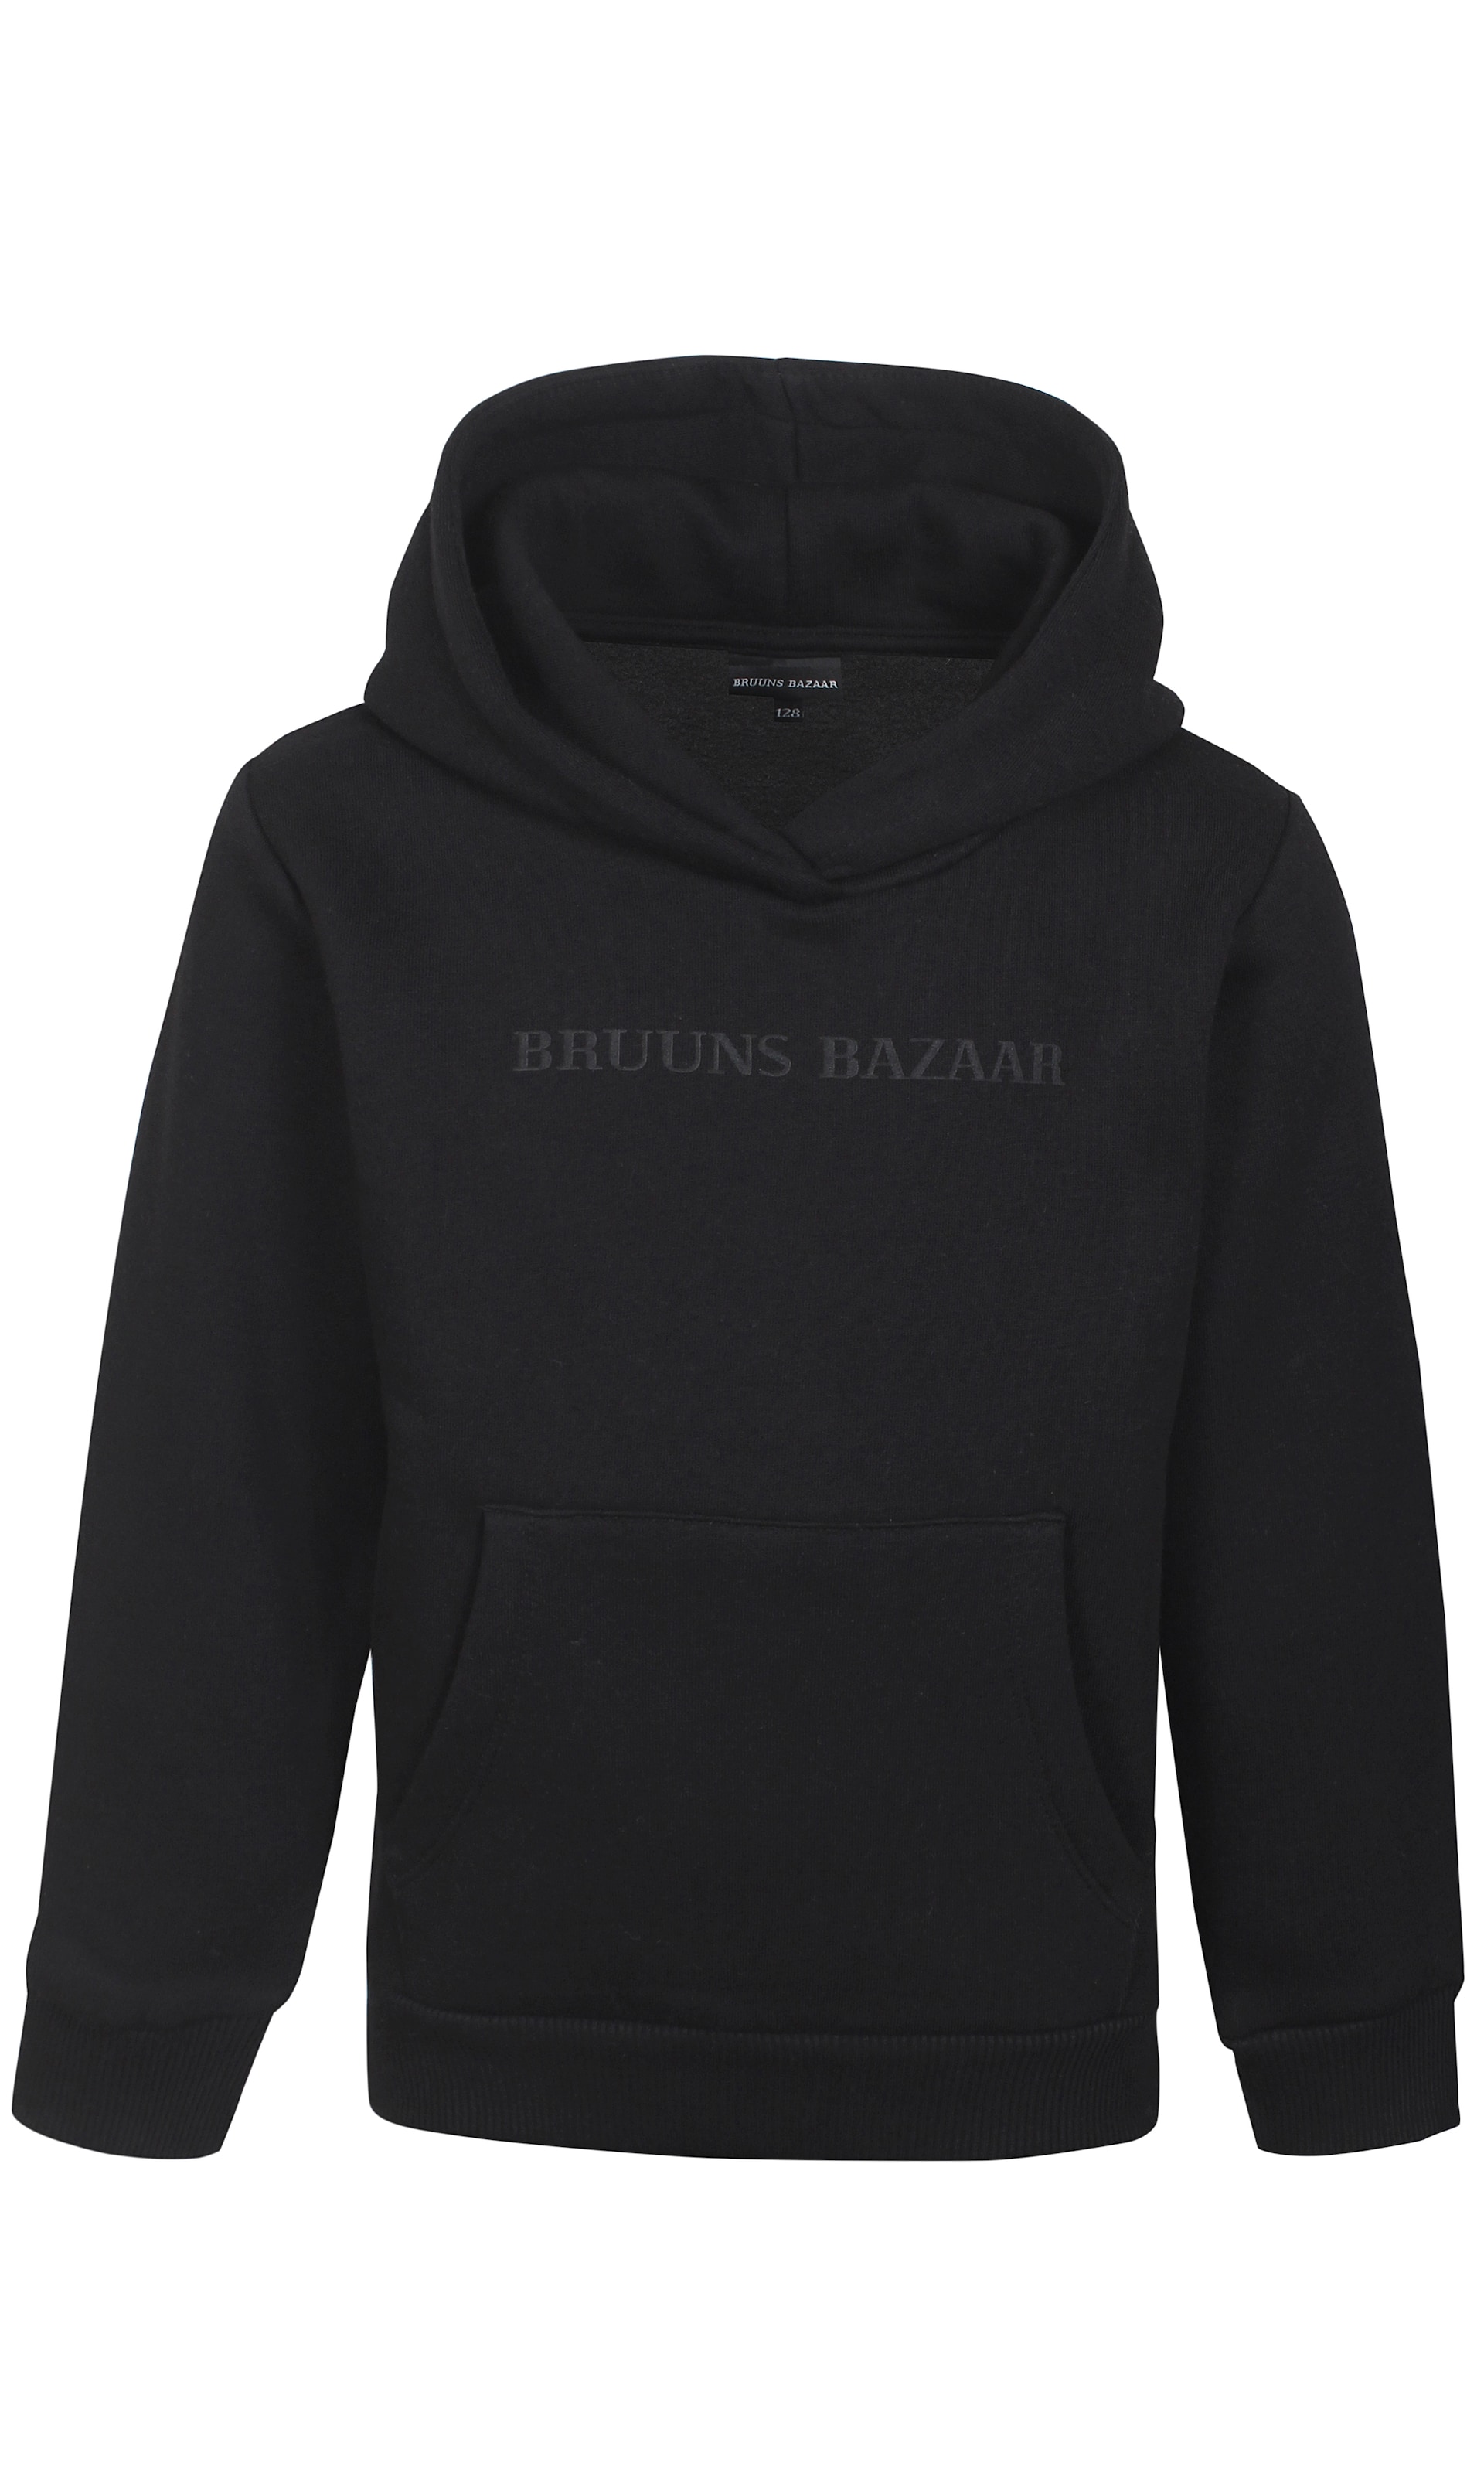 Bruuns Bazaar Kids Sweat-Shirt 92 Noir